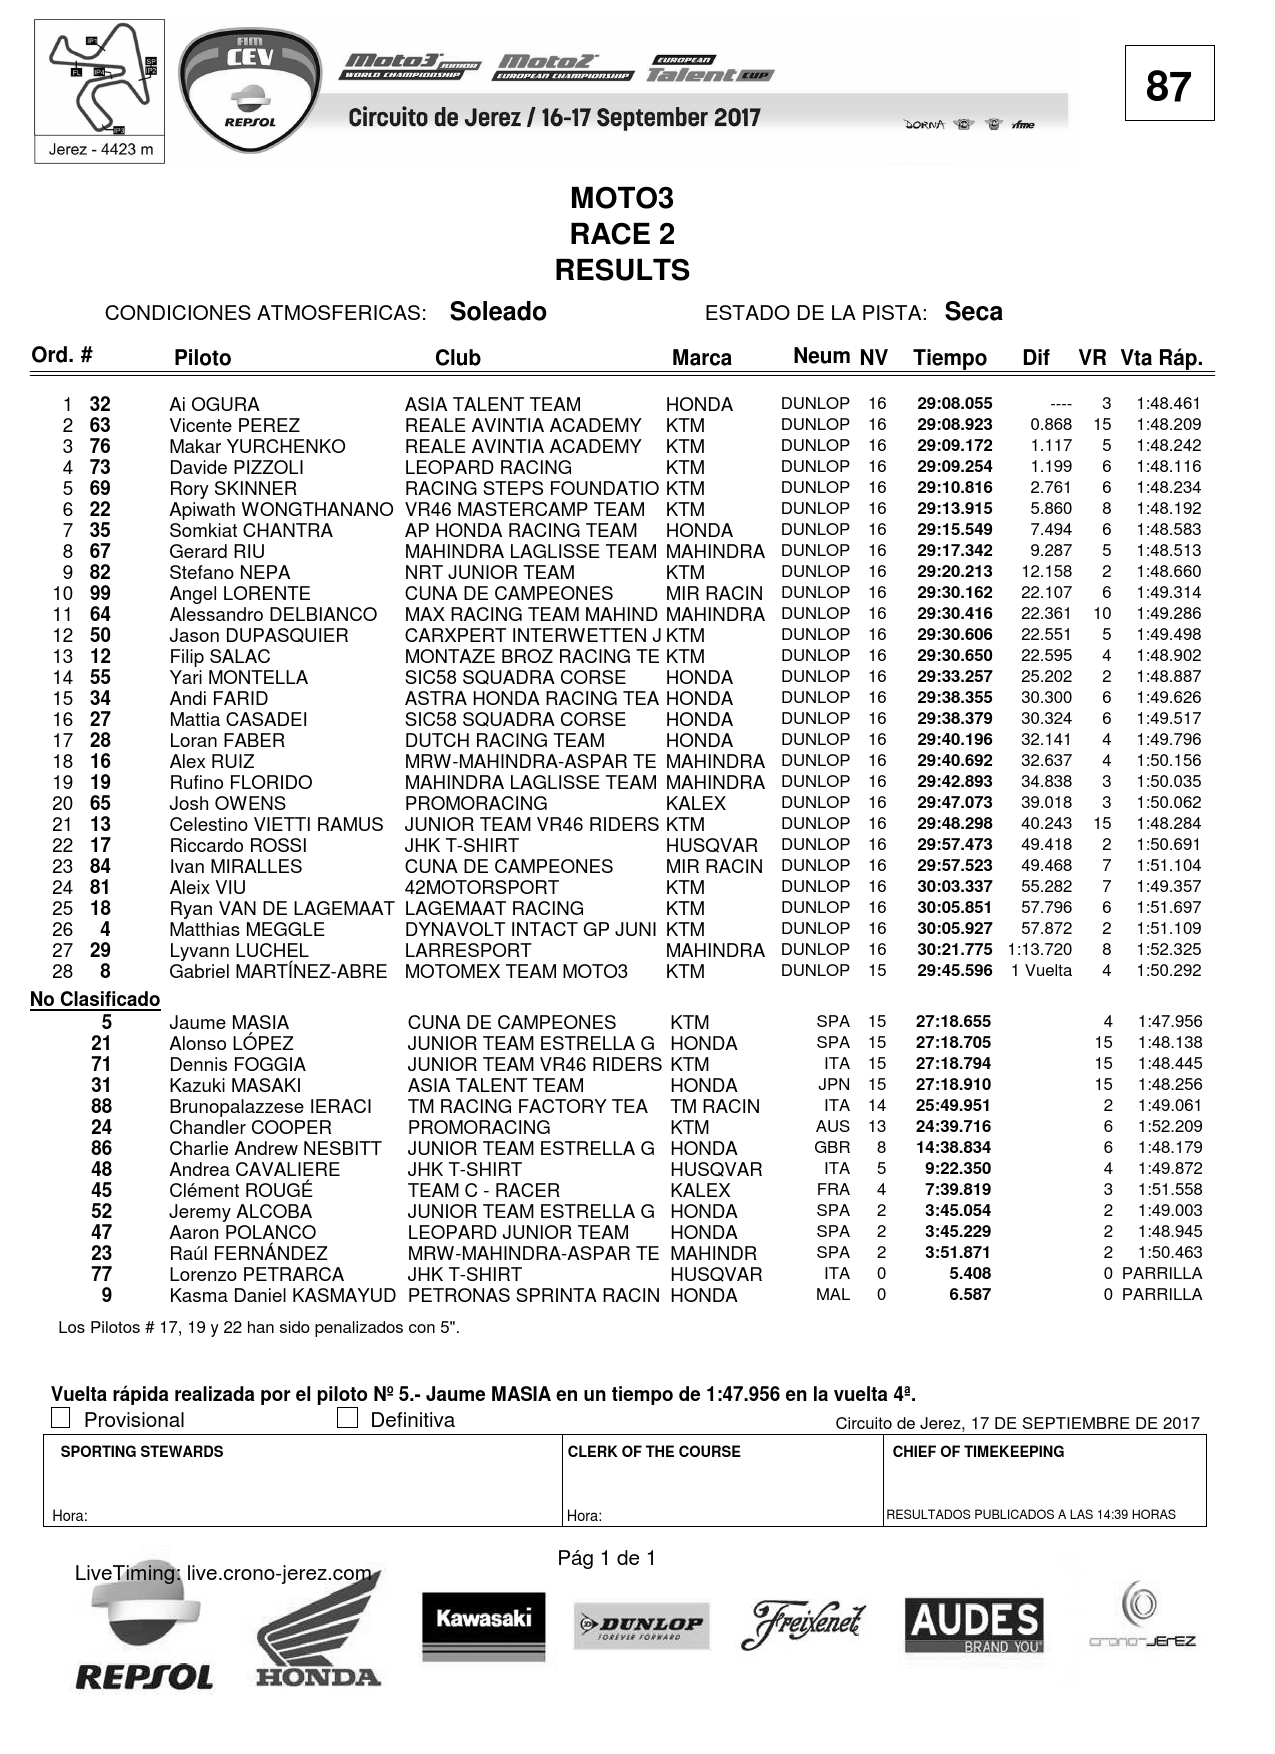 Результаты 2-й гонки CEV Moto3 в Херсе